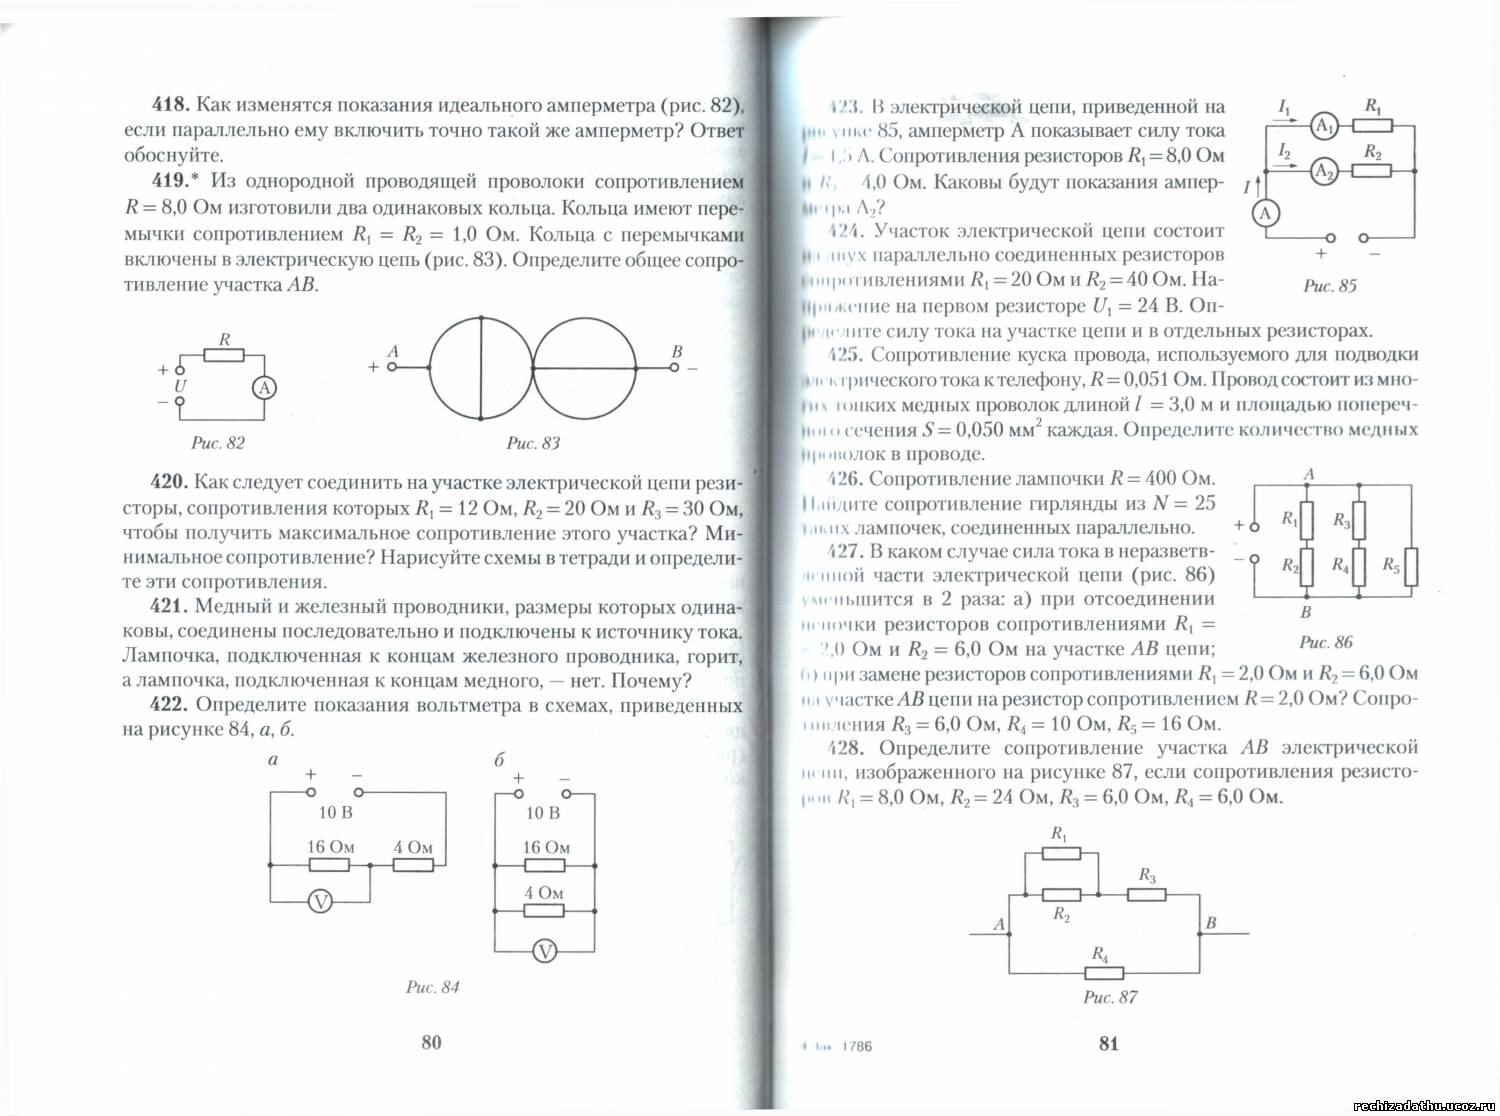 Сборник задач по физике 8 класс 2019 л. а .исанченкова, и. э. слесарь. Определите показание идеального амперметра в цепи